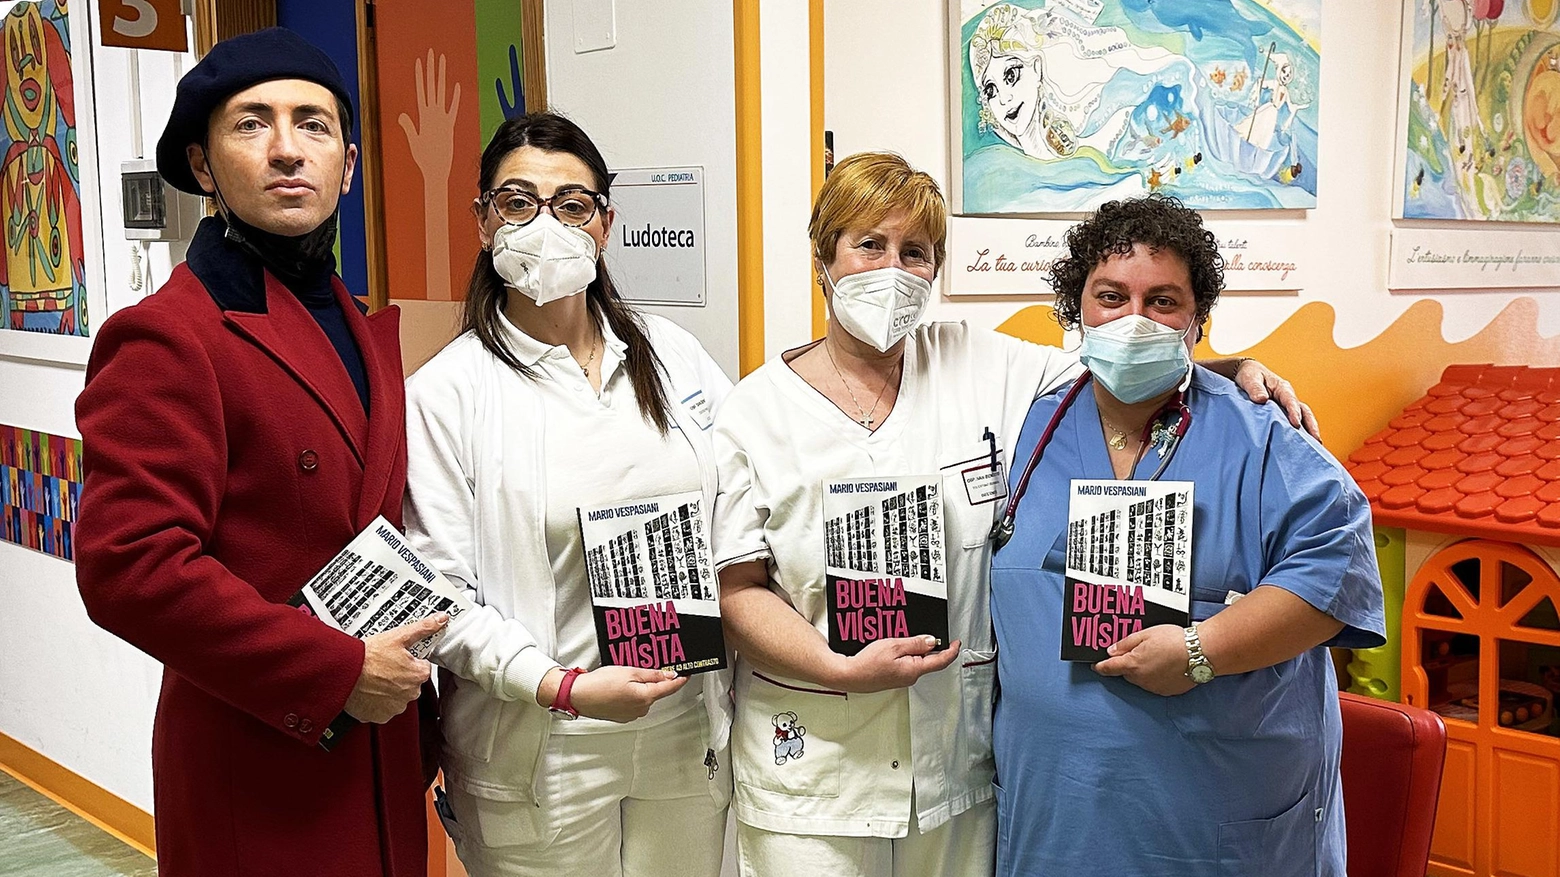 Mario Vespasiani   dona l’ultimo libro  al reparto pediatrico